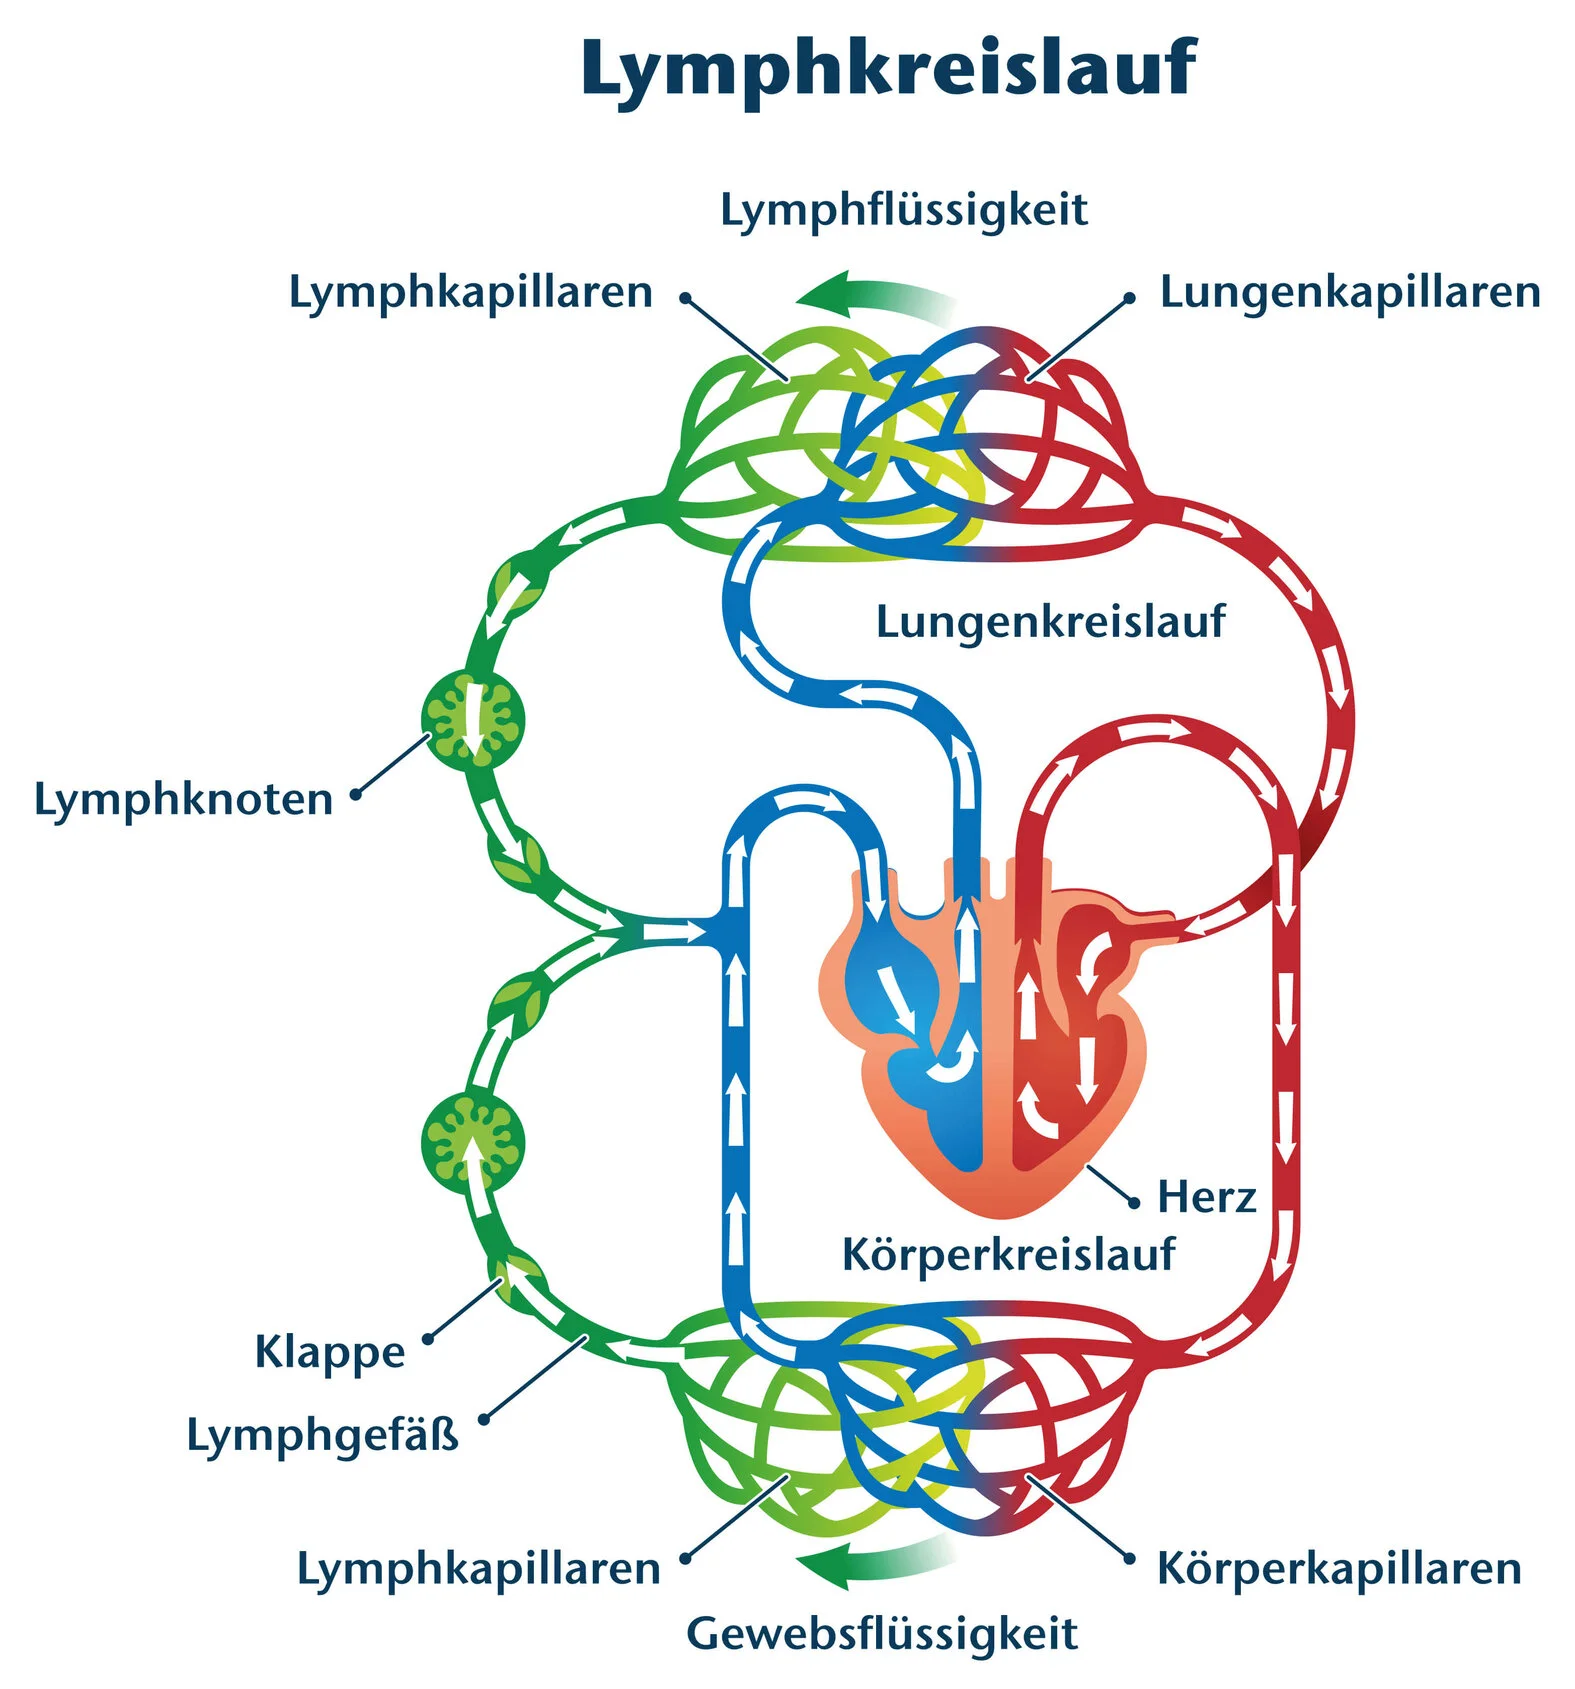 Lymphkreislauf: schematische Darstellung